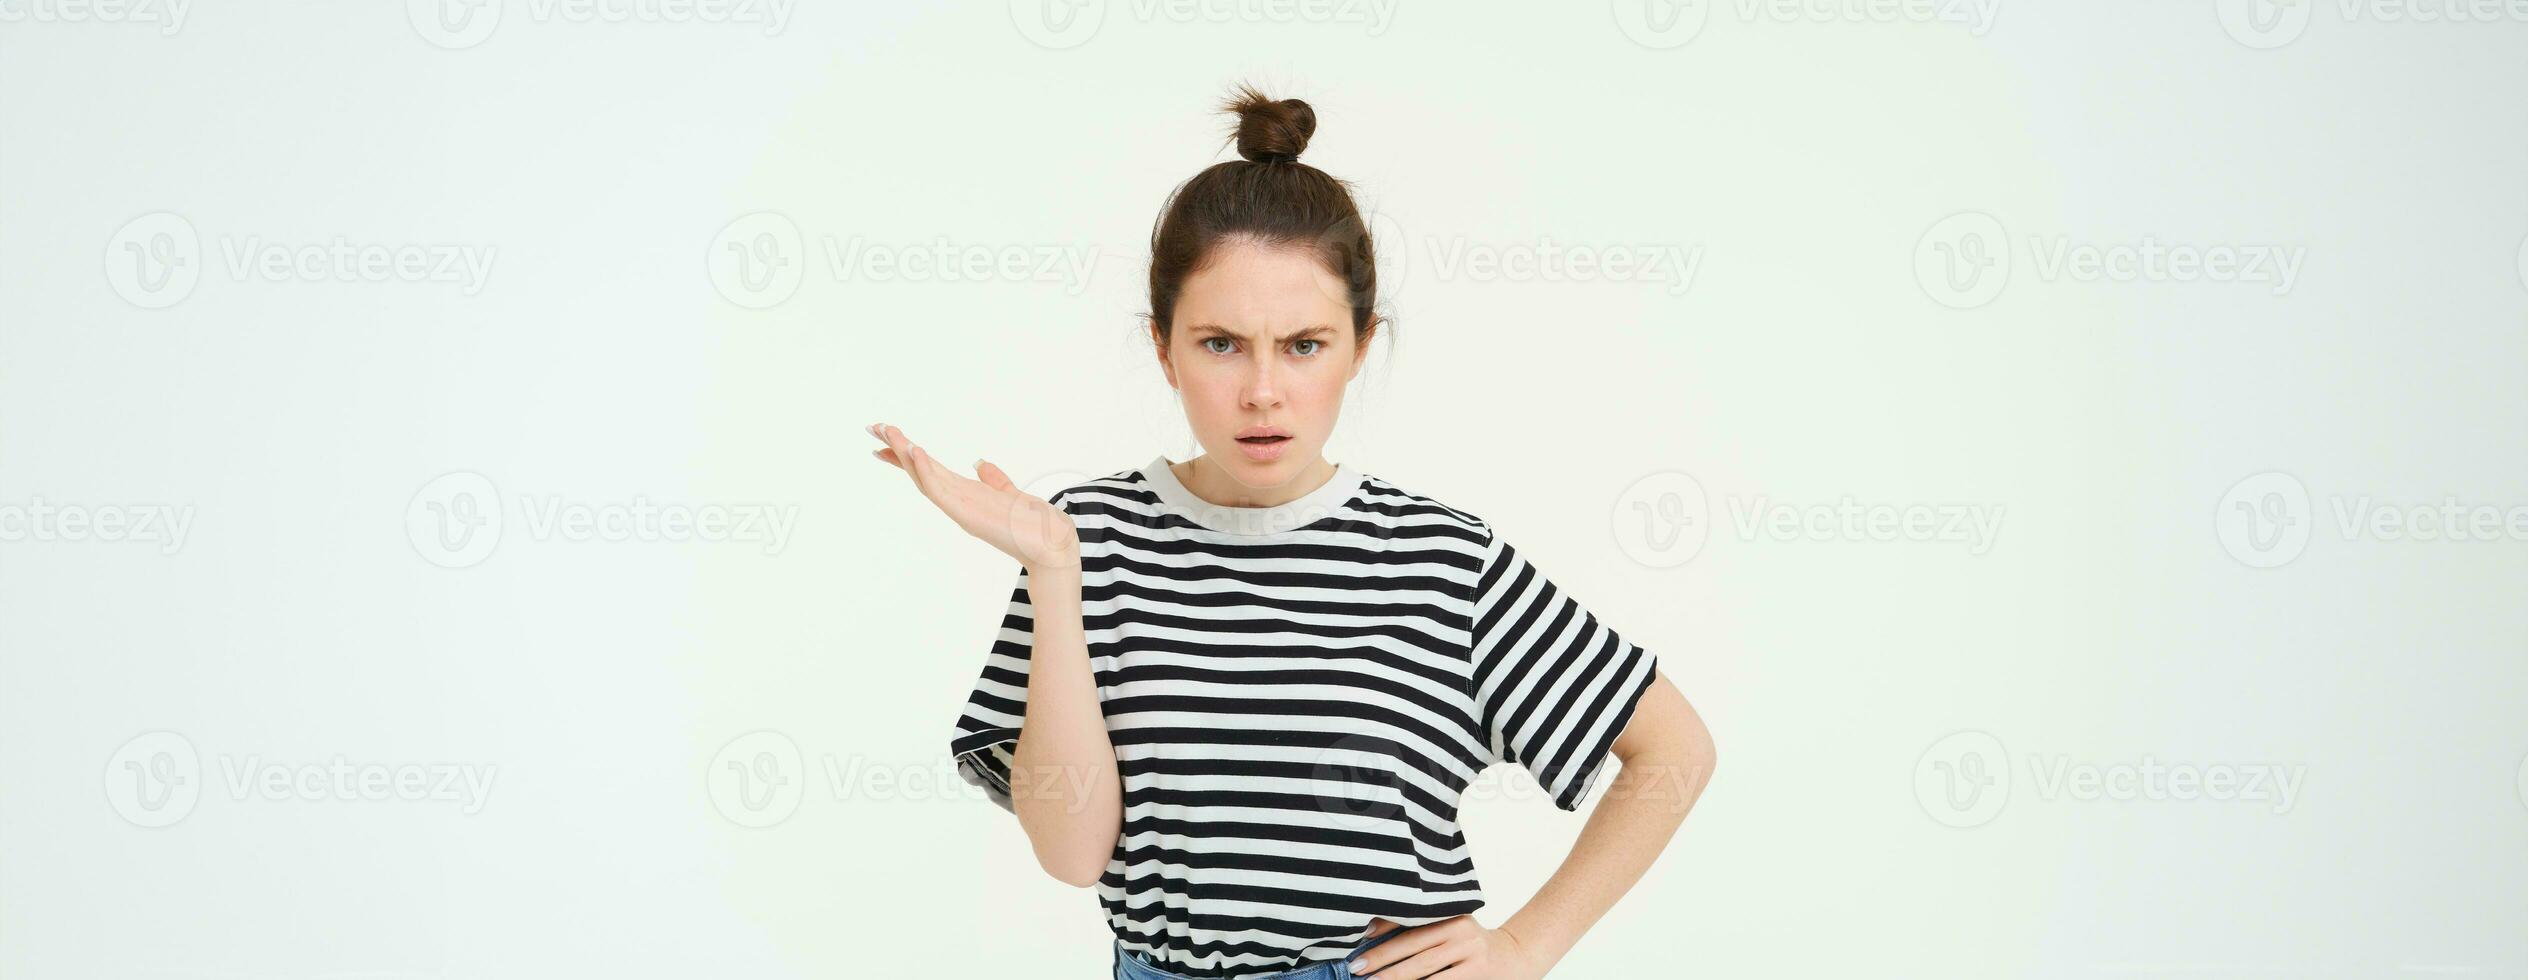 imagem do frustrado mulher reclamando, olhando intrigado, encolhendo os ombros e carrancudo, em pé sobre branco fundo foto